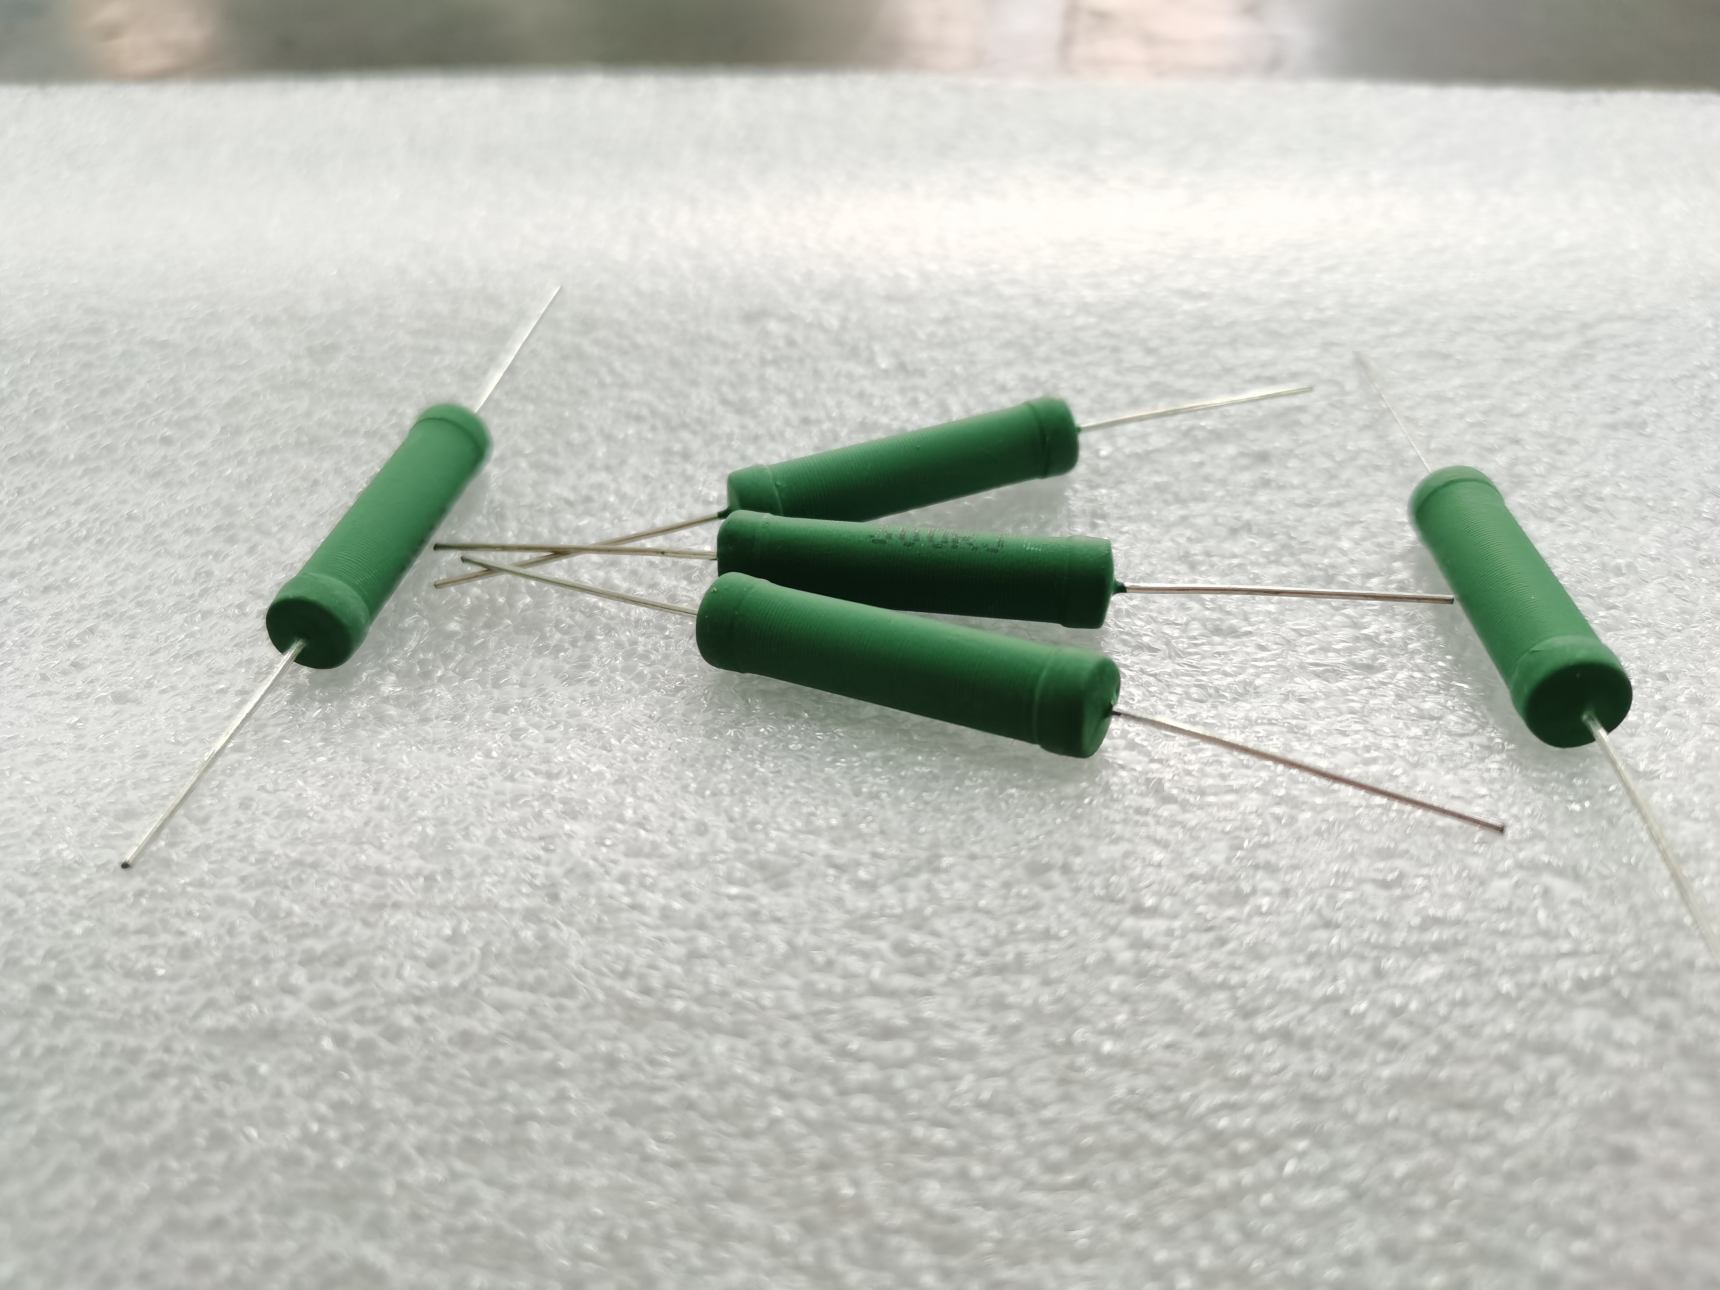 300 Ohm ceramic resistor  wire wound resistor 1w 2w 3w 8w 12w